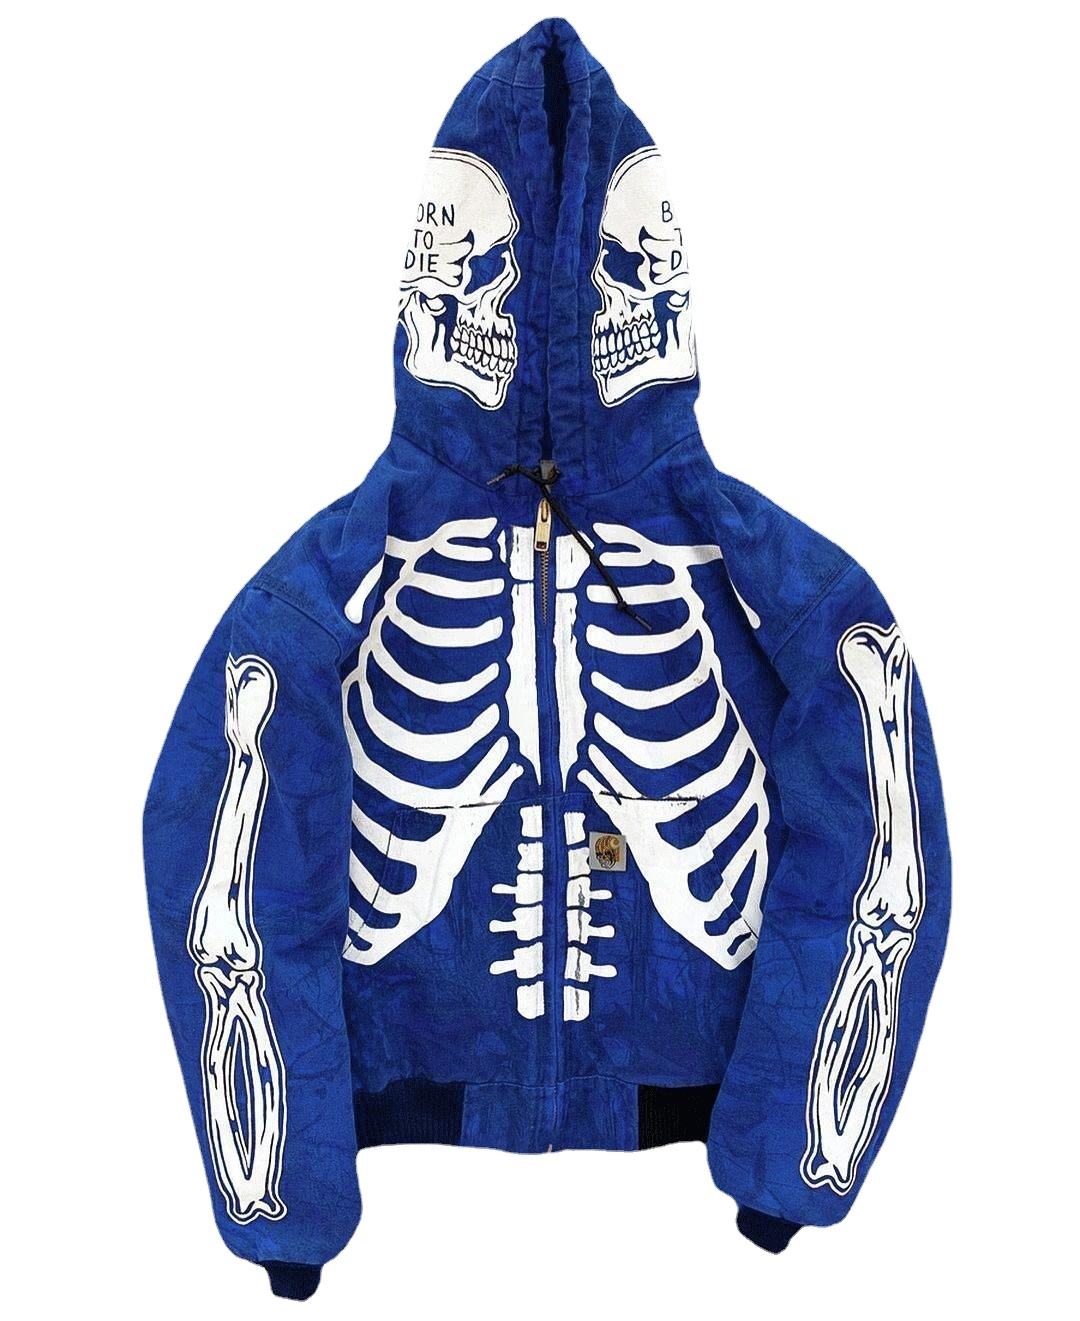 Los hombres del cráneo del esqueleto de la personalidad se pueden personalizar con capucha